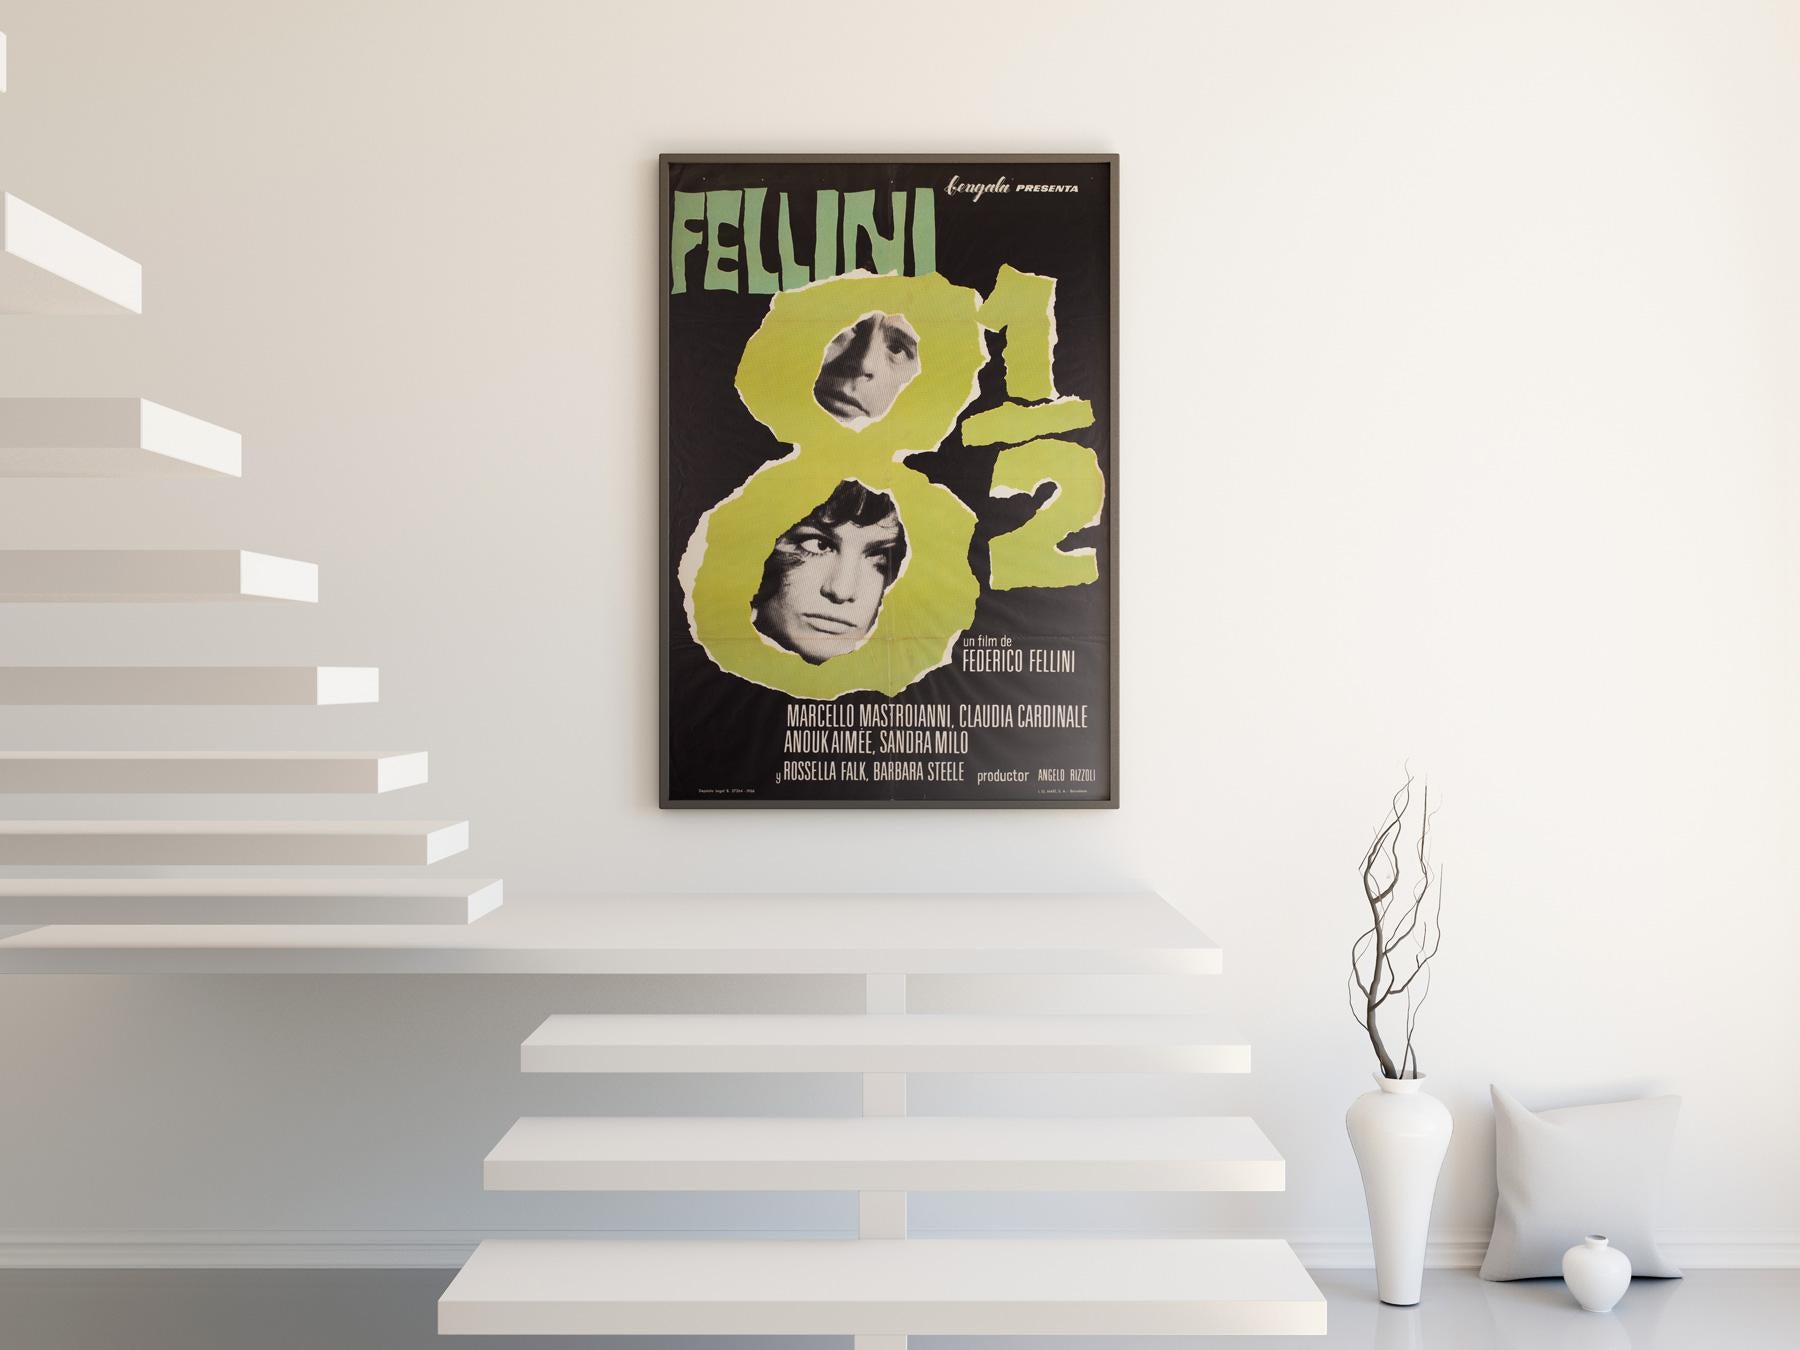 Affiche originale de la première année de sortie du film espagnol 8 1/2 de Fellini. 

Cette affiche de cinéma vintage mesure 26 1/2 x 39 pouces et sera envoyée roulée (non encadrée).

Année 1963
Type de poster espagnol 1 feuille
Style -
Art